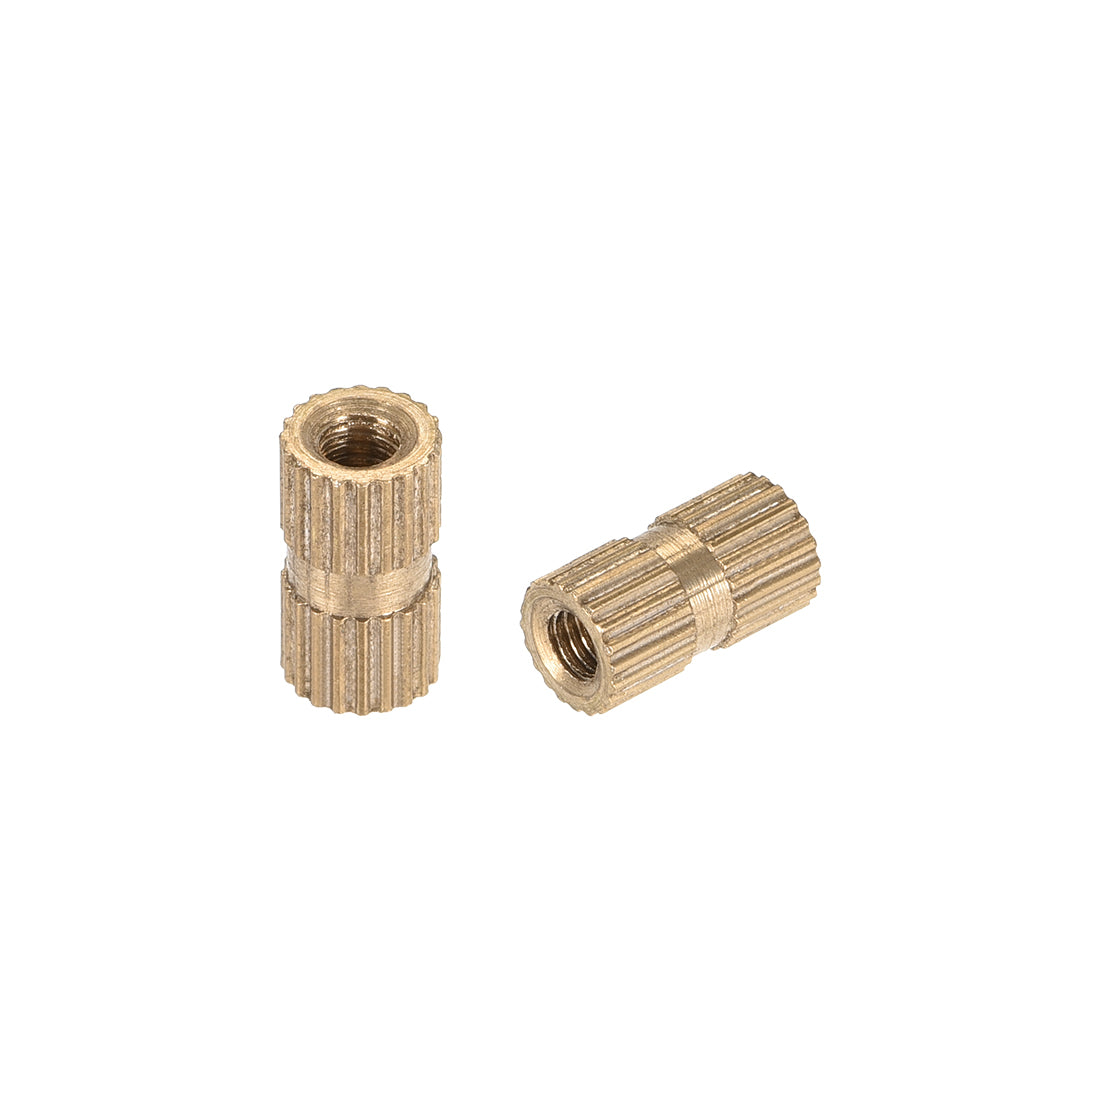 uxcell Uxcell Knurled Insert Nuts, M3 x 10mm(L) x 5mm(OD) Female Thread Brass Embedment Assortment Kit, 30 Pcs